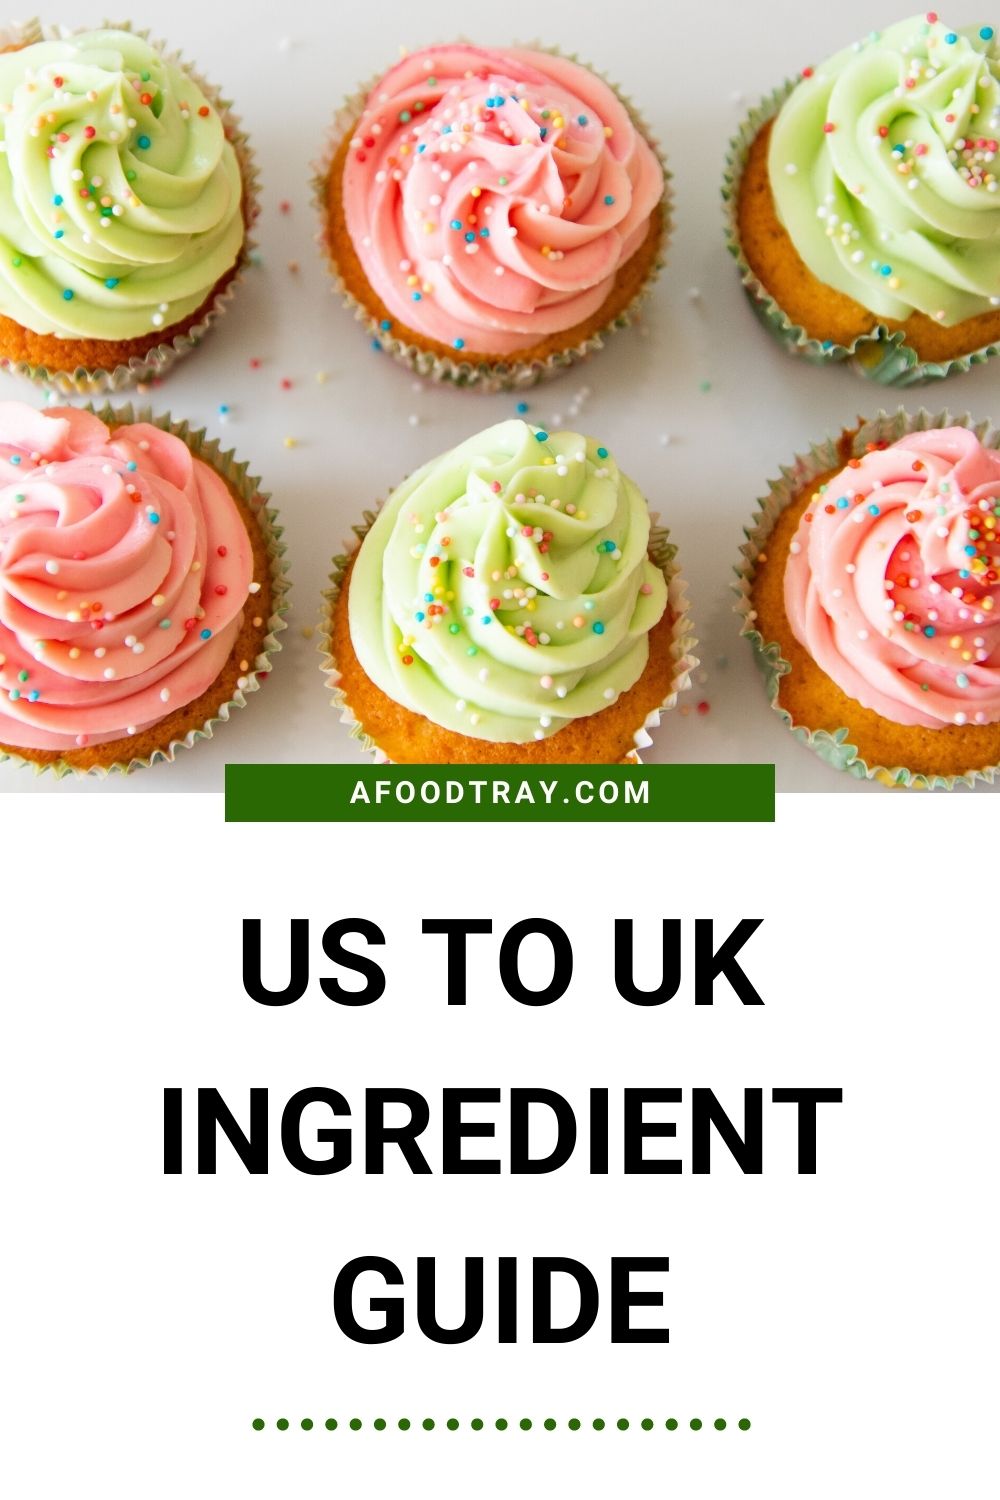 US to UK ingredient guide